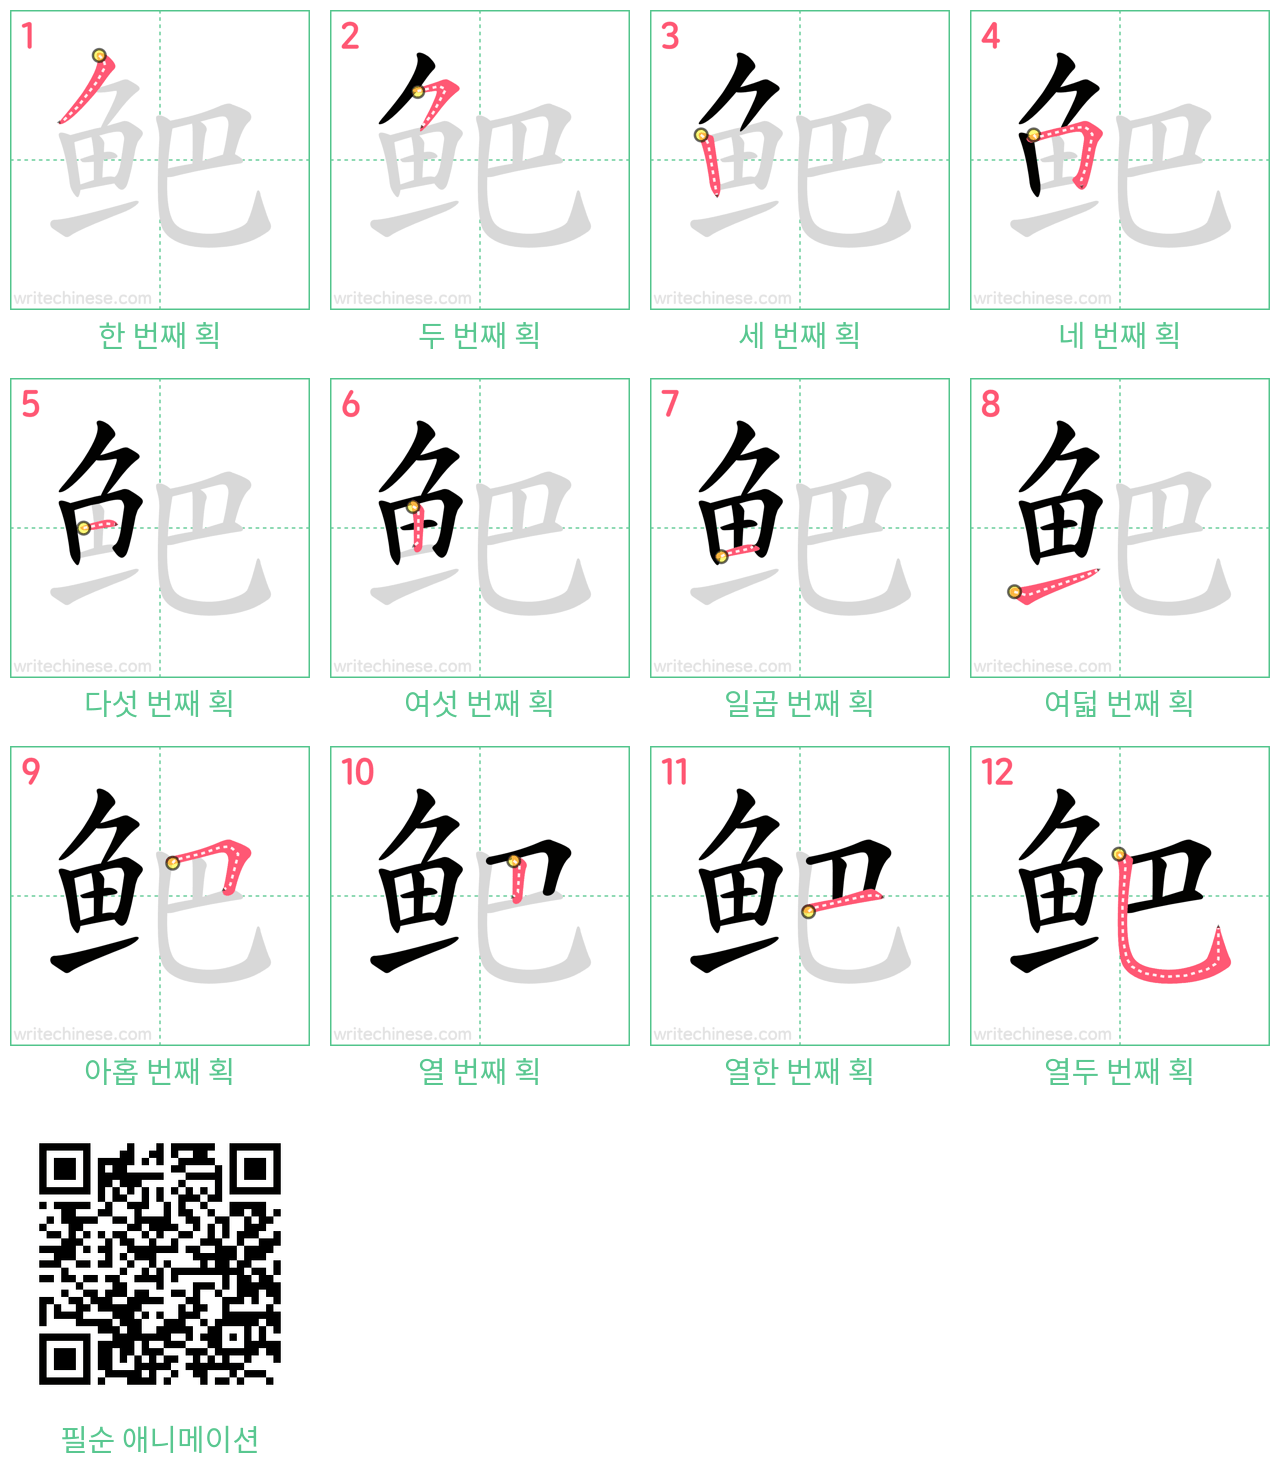 鲃 step-by-step stroke order diagrams